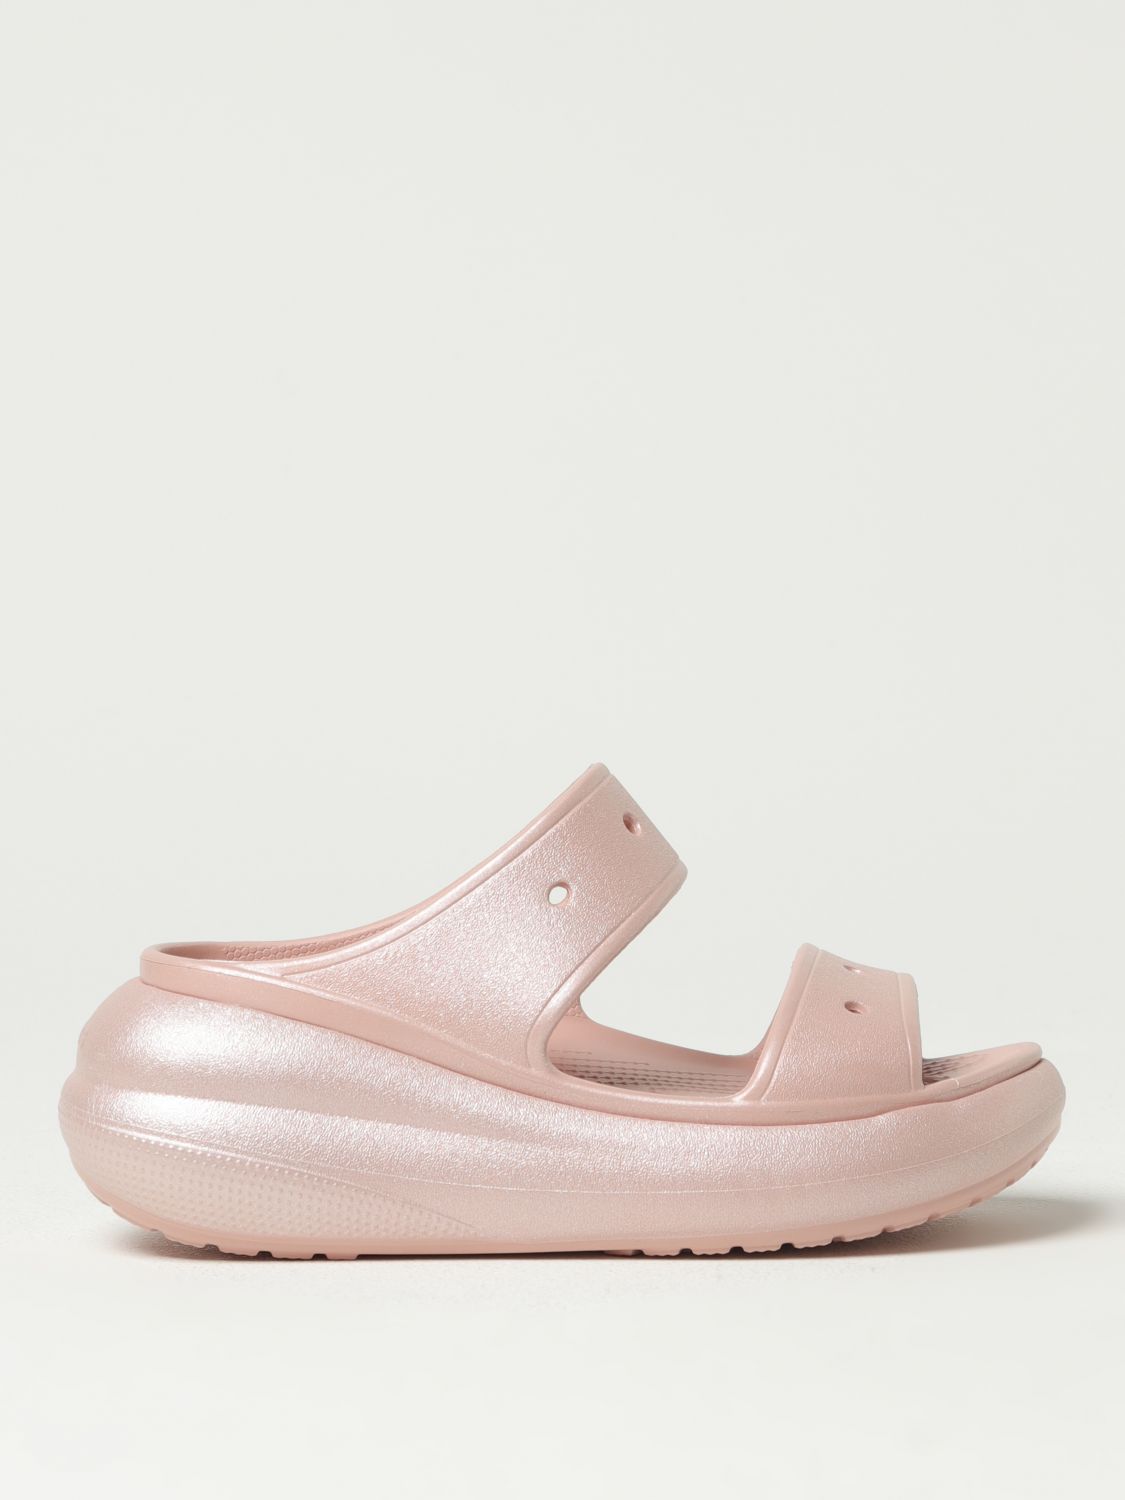 Crocs Flat Sandals CROCS Woman colour Pink